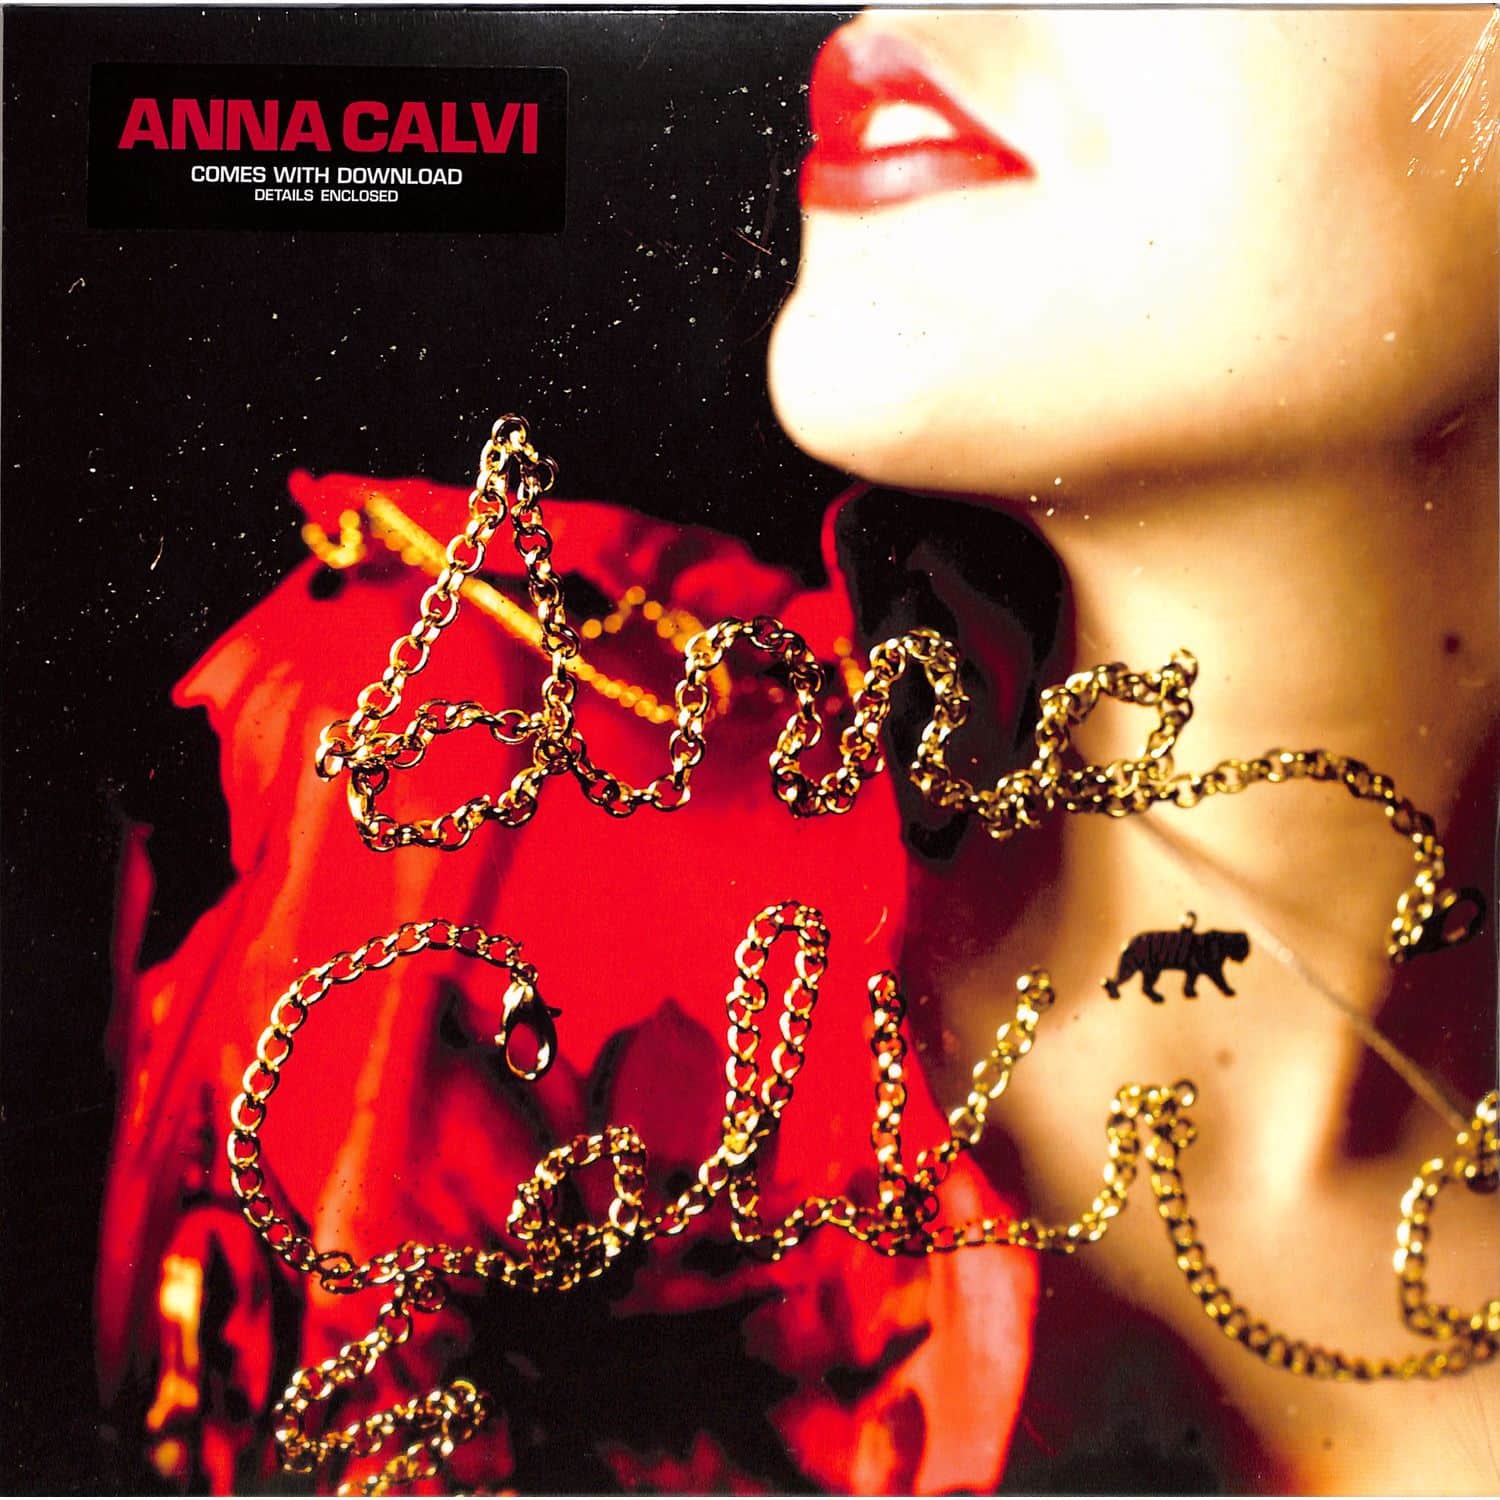 Anna Calvi - ANNA CALVI 